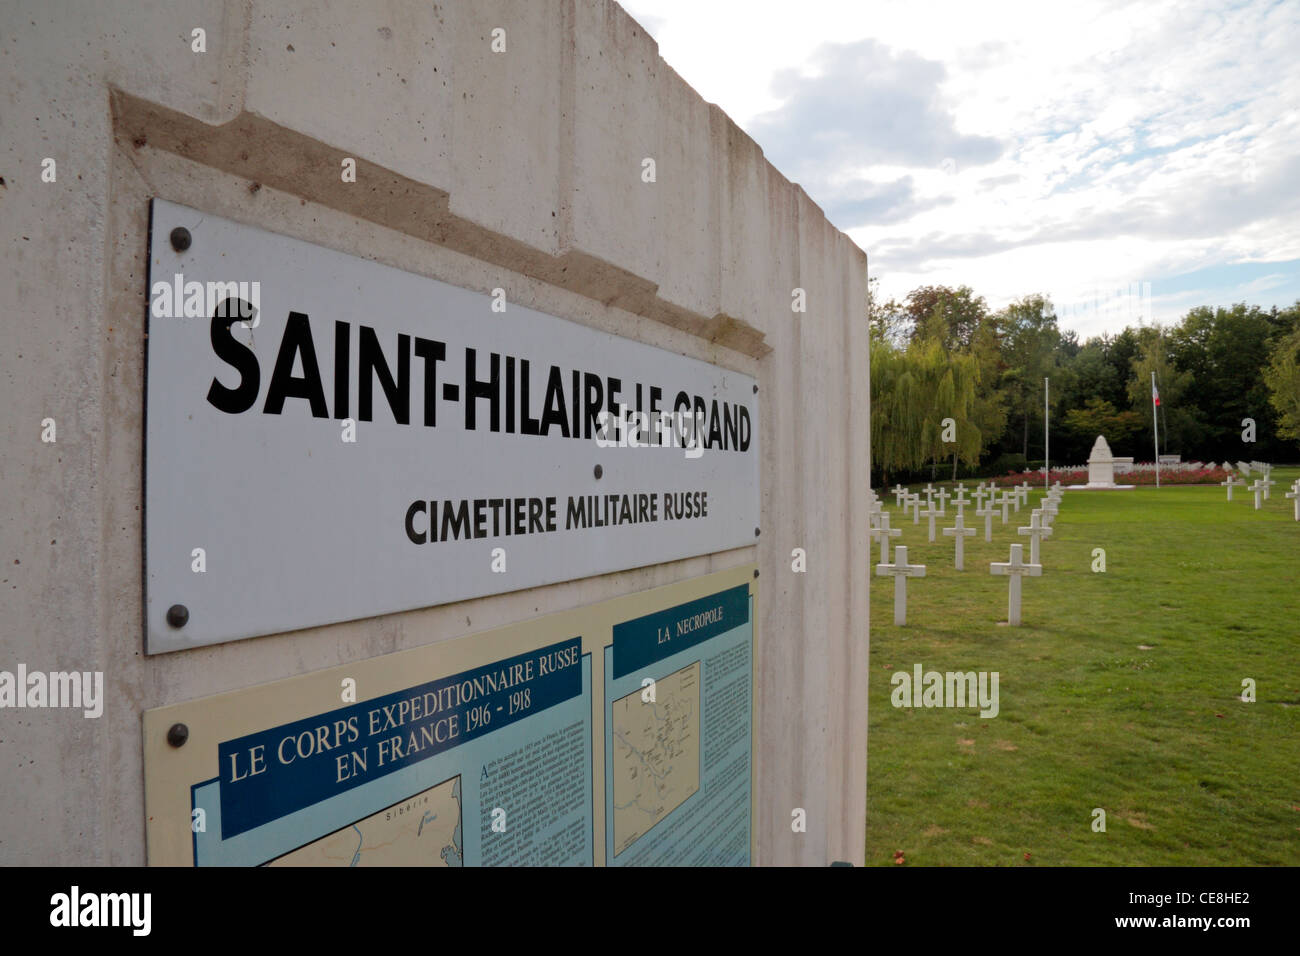 Panneau d'entrée à la Saint-Hilaire Le grand cimetière militaire russe, près de Reims, Marne, France. Banque D'Images